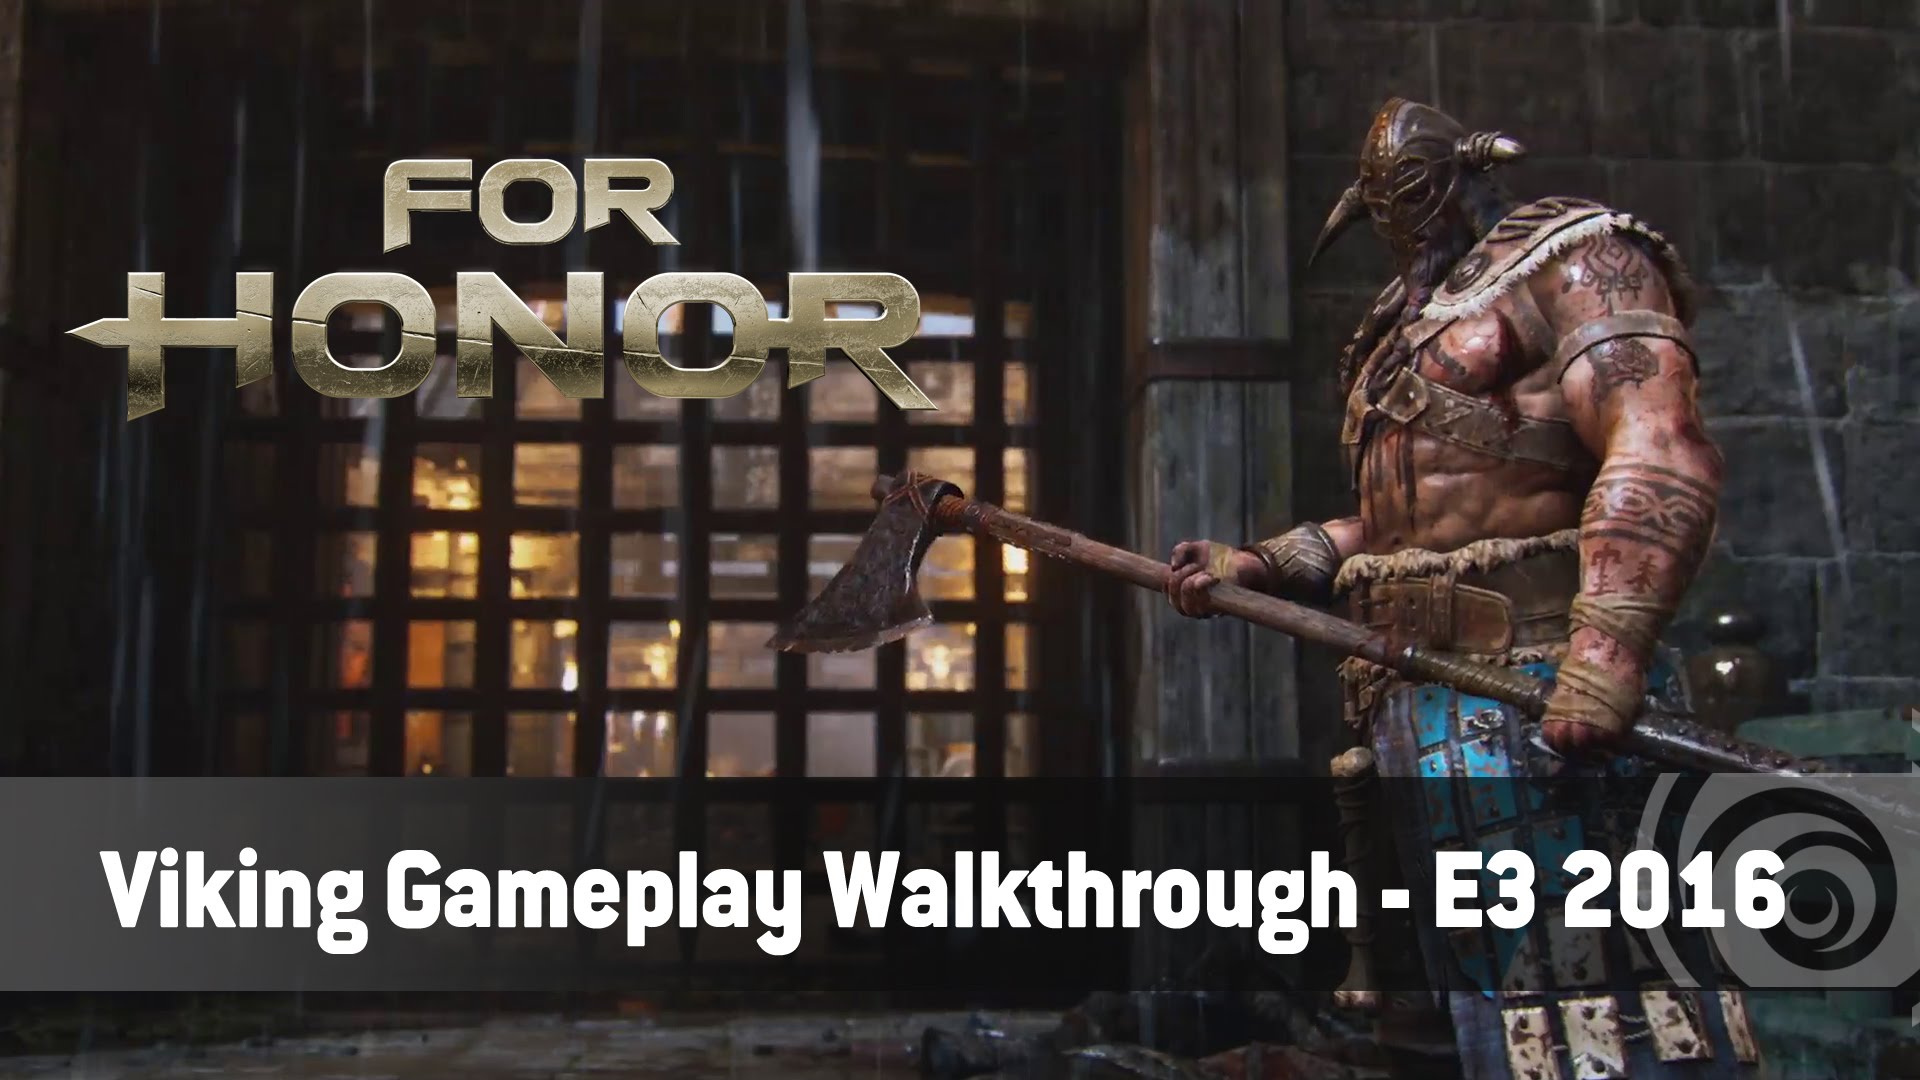 For Honor – Viking Gameplay Walkthough Trailer - E3 2016